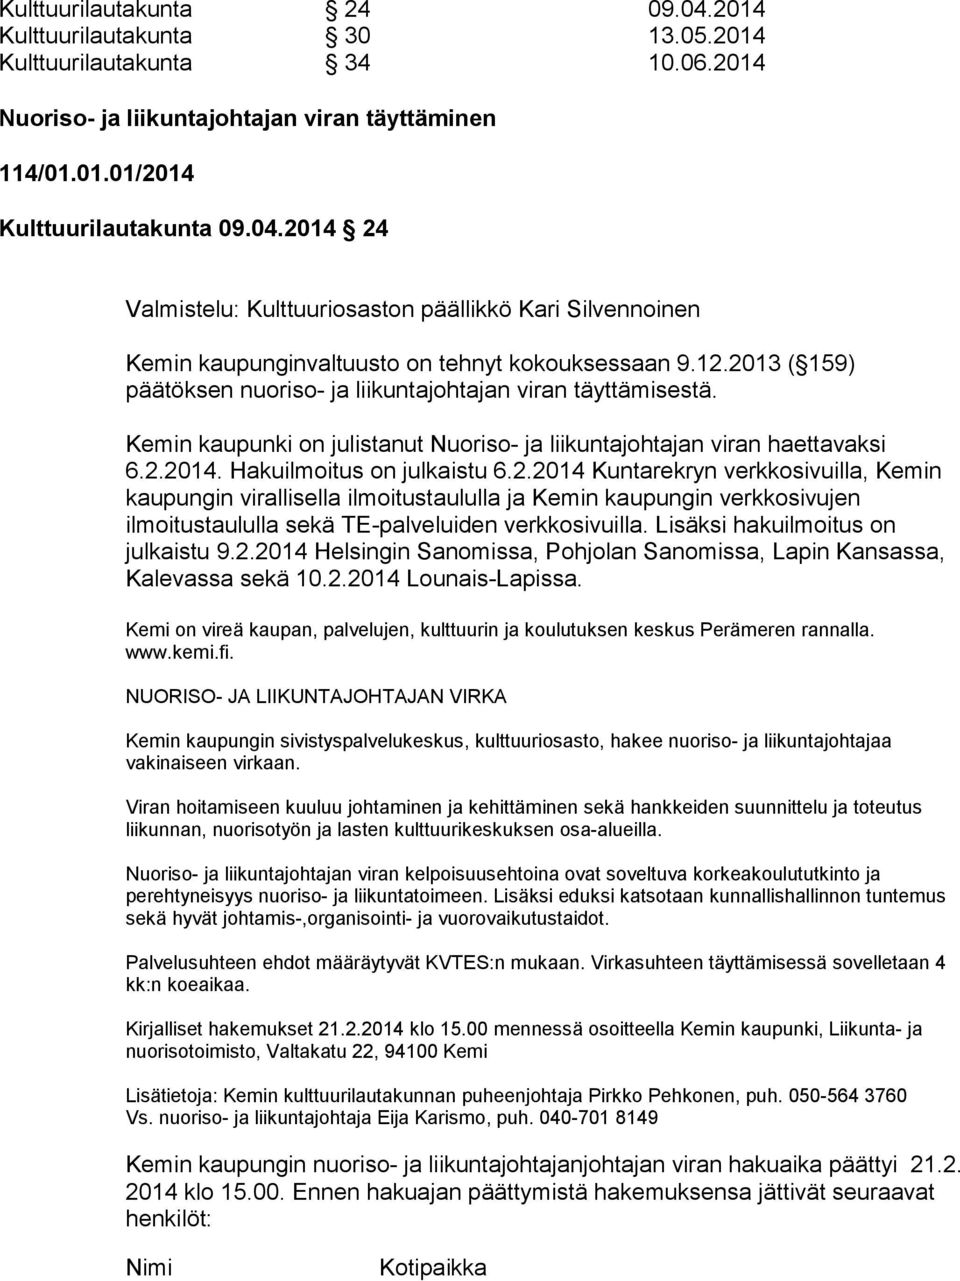 Lisäksi hakuilmoitus on julkaistu 9.2.2014 Helsingin Sanomissa, Pohjolan Sanomissa, Lapin Kansassa, Kalevassa sekä 10.2.2014 Lounais-Lapissa.